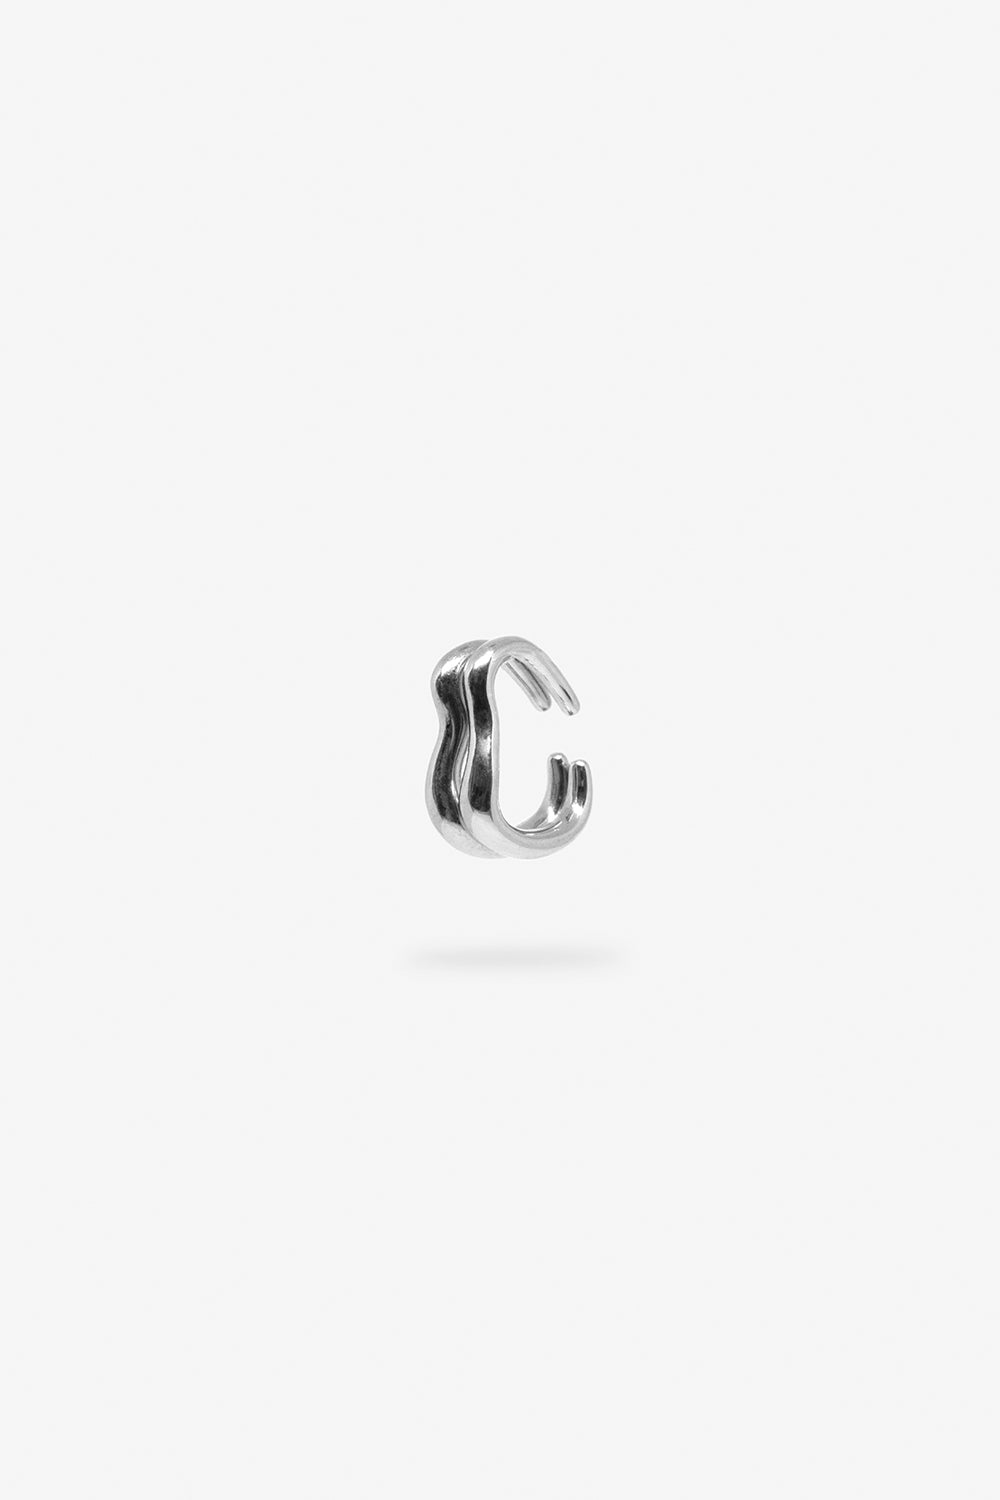 Swirl Ear Cuff Set - Sterling Silver